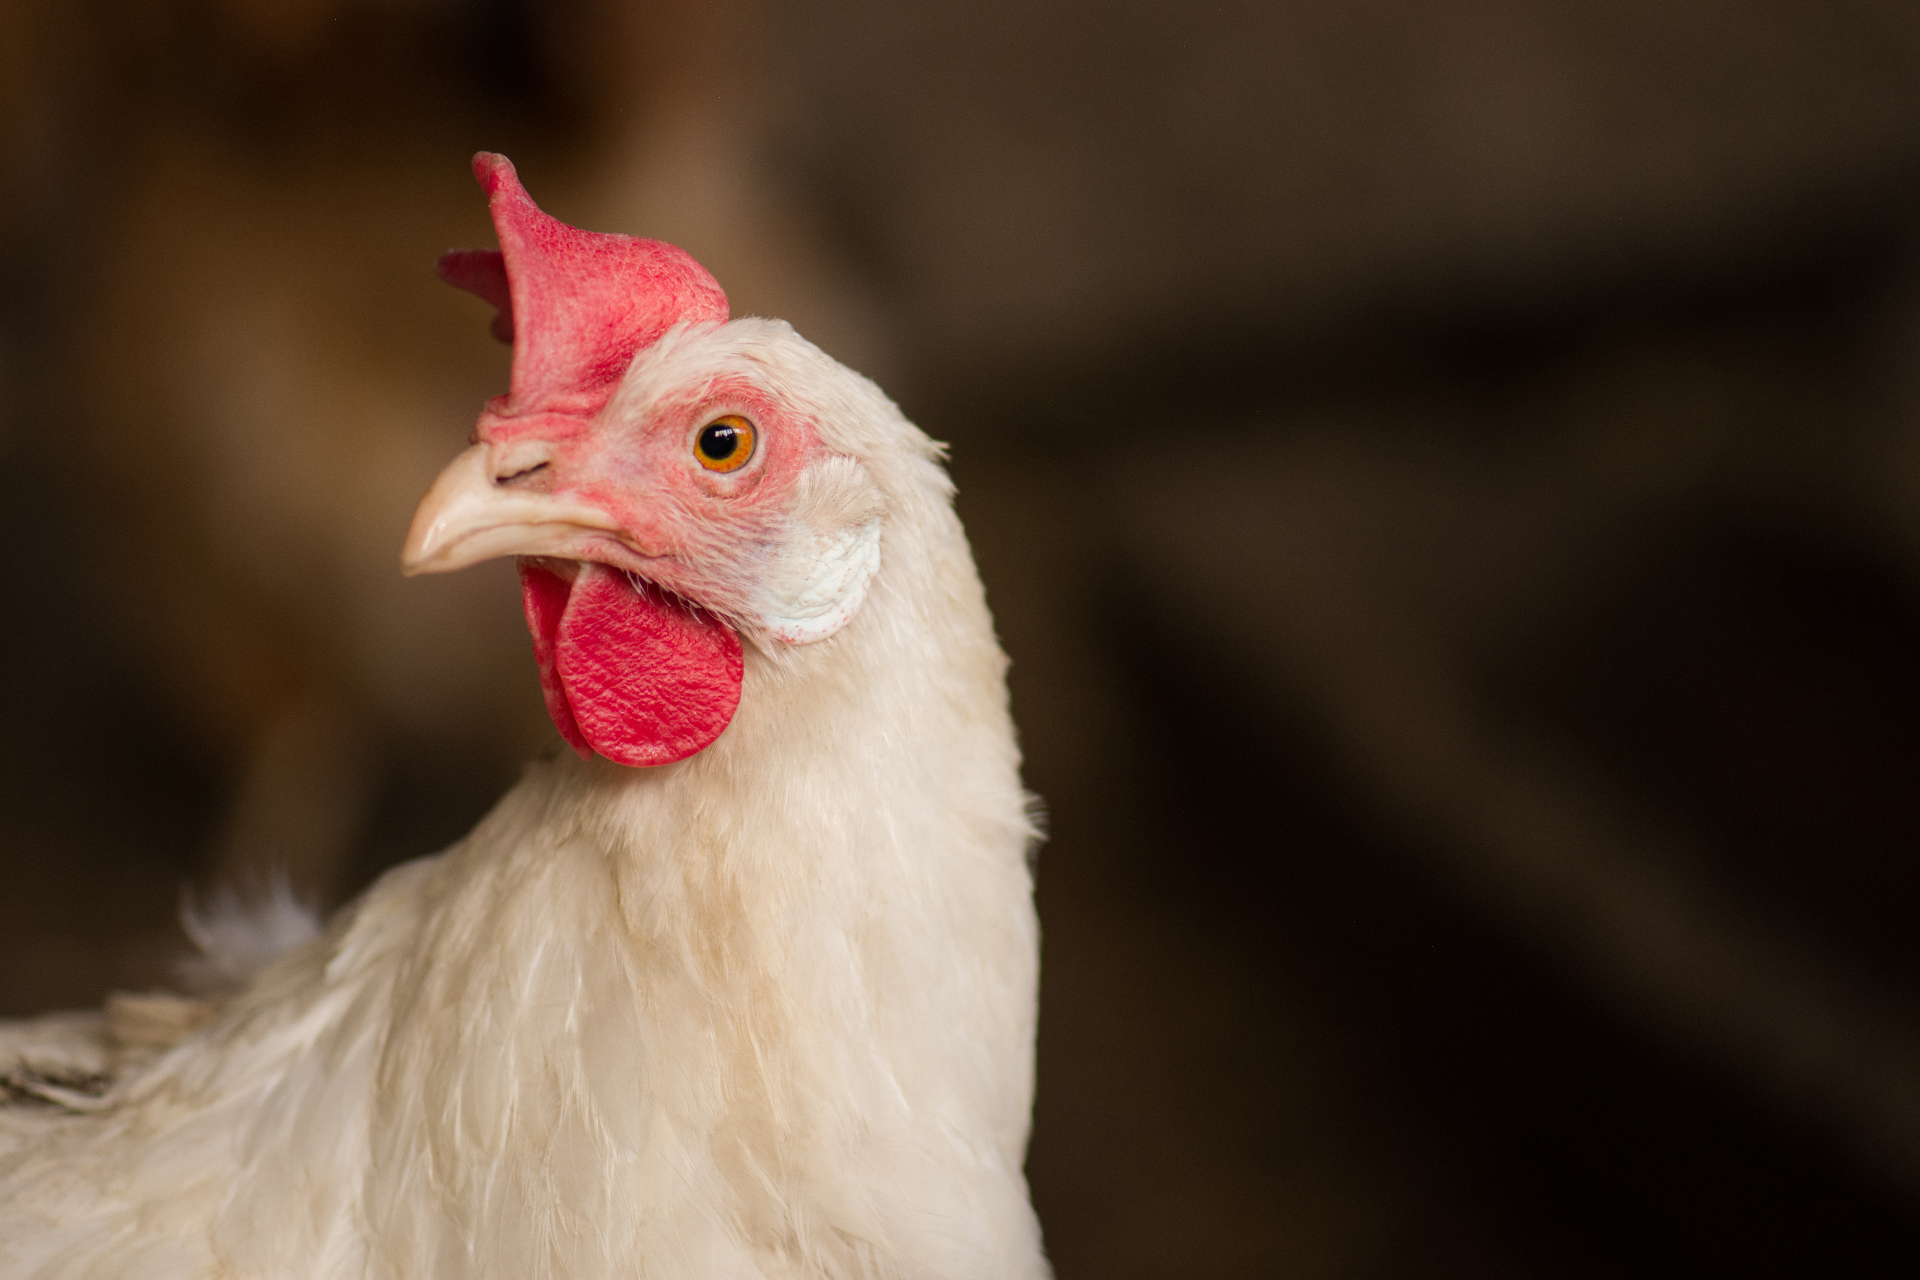 Perché è necessario eliminare le gabbie negli allevamenti di galline ovaiole  - LifeGate